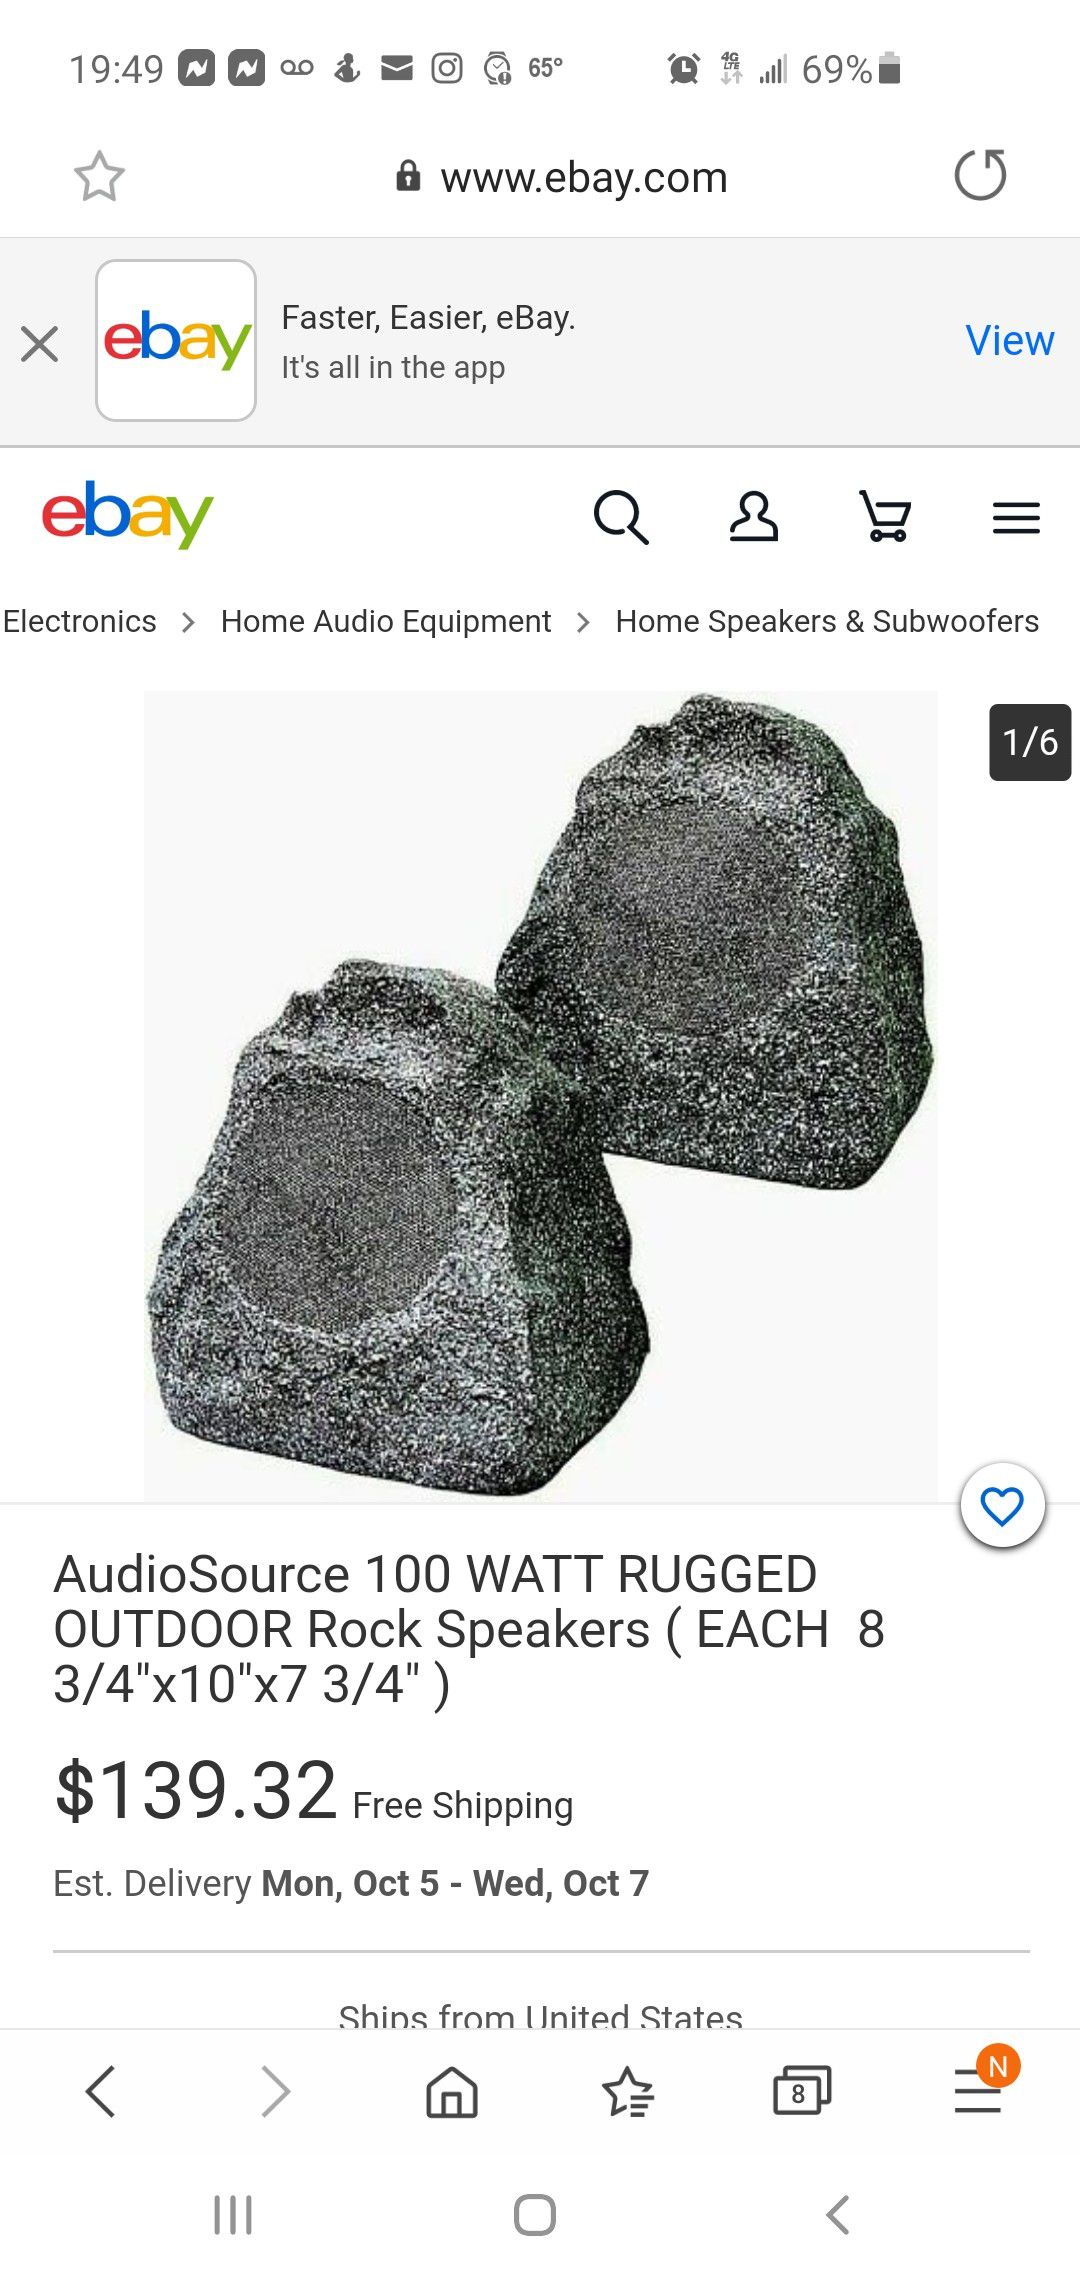 Audiosource out door rock speakers